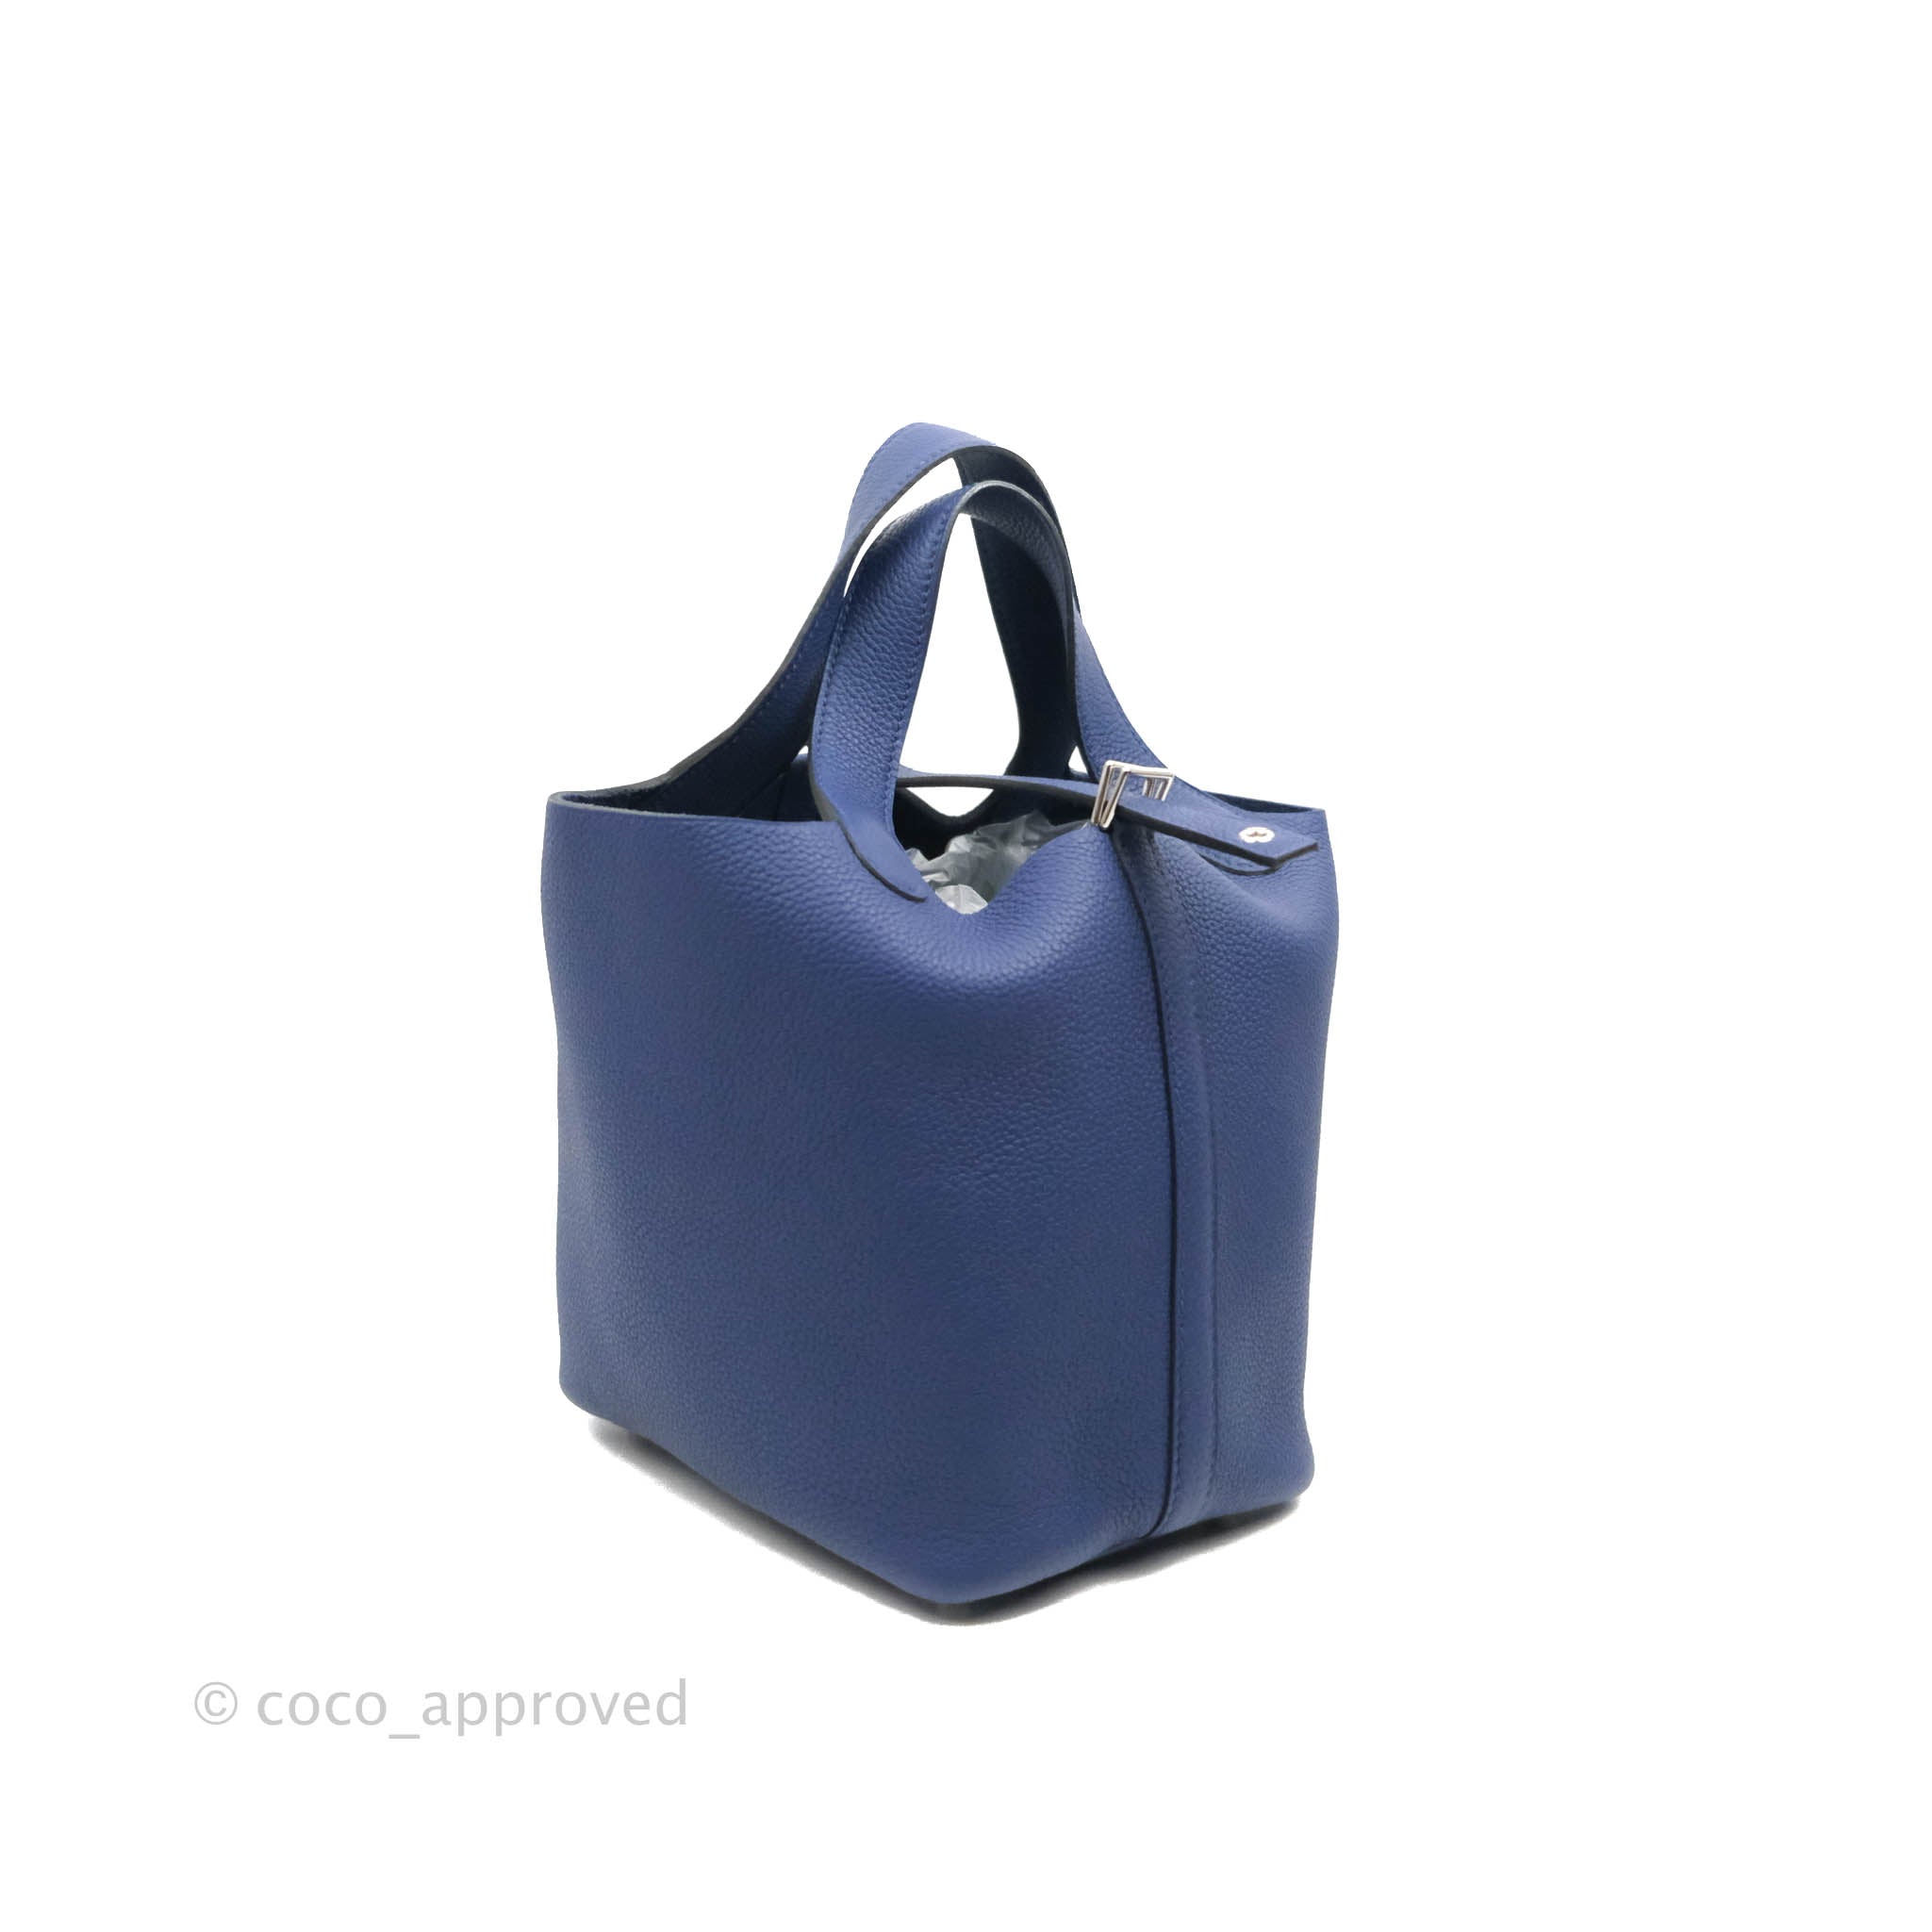 Hermès Picotin Lock 18 In Bleu Saphir And Bleu Brighton Clemence